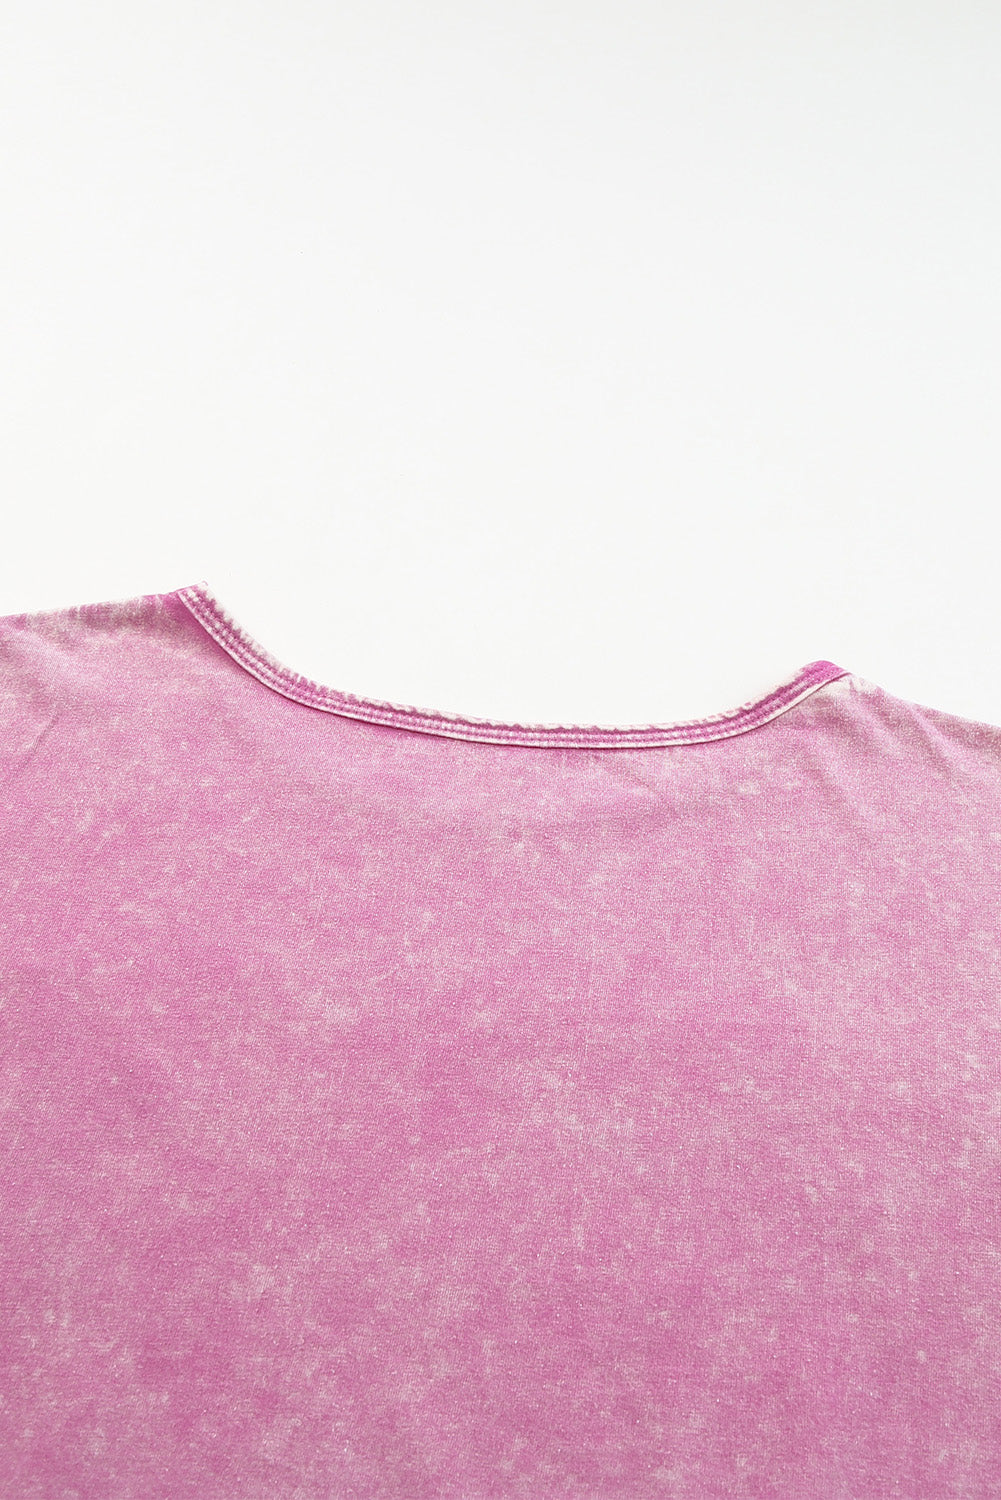 Rožnata majica z grafiko Mineral Wash s starinskim potiskom zvezd